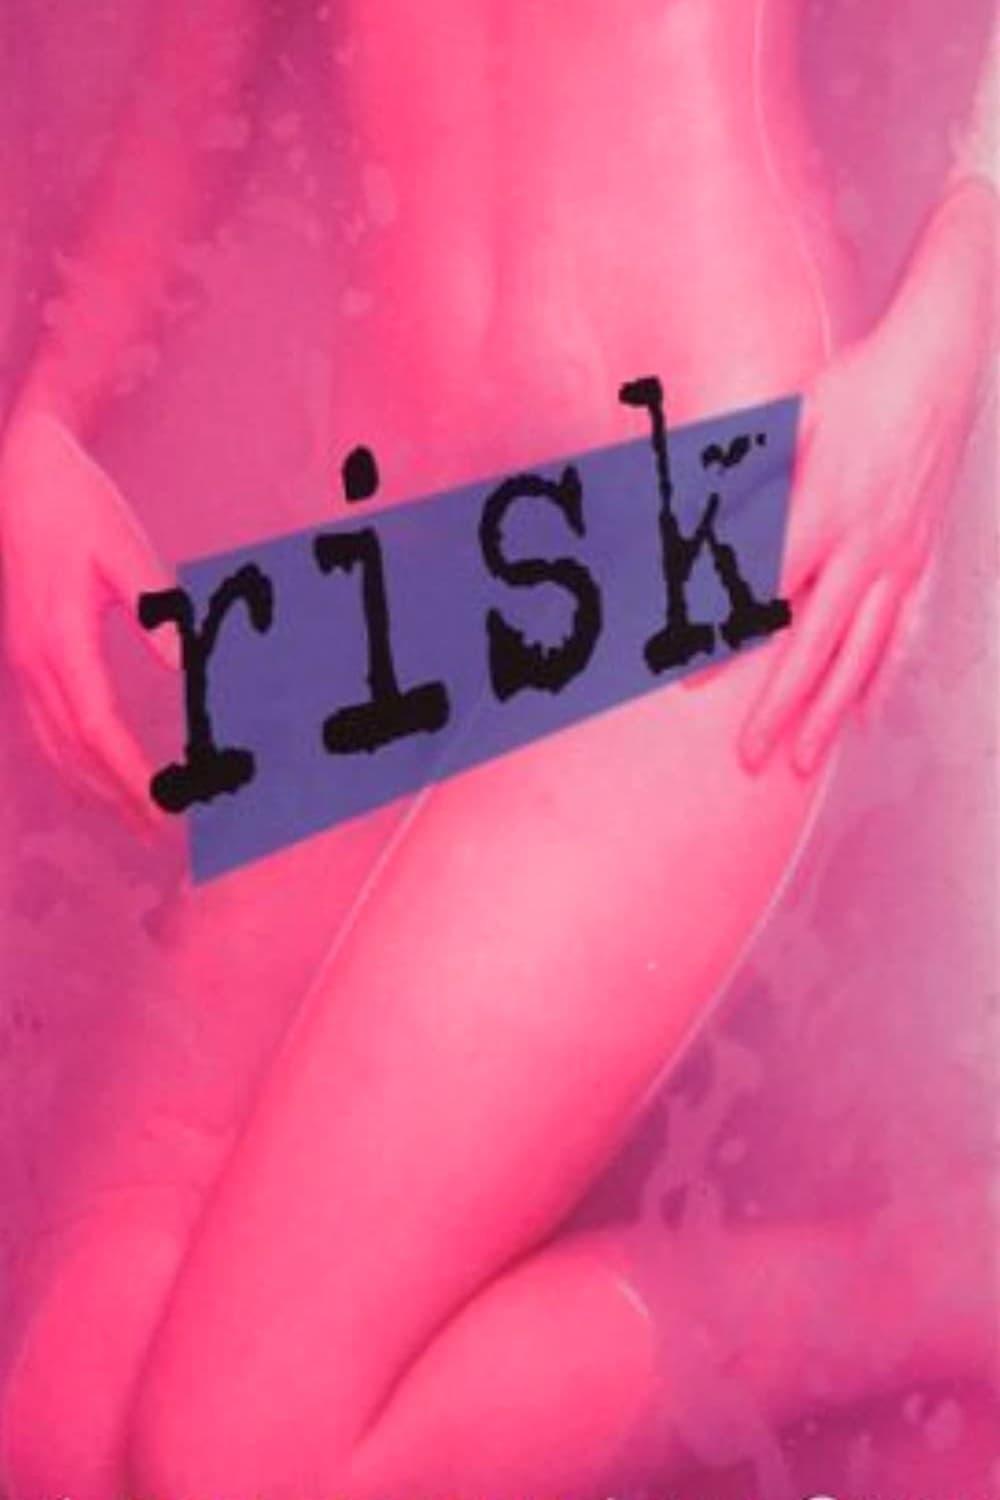 Risk poster